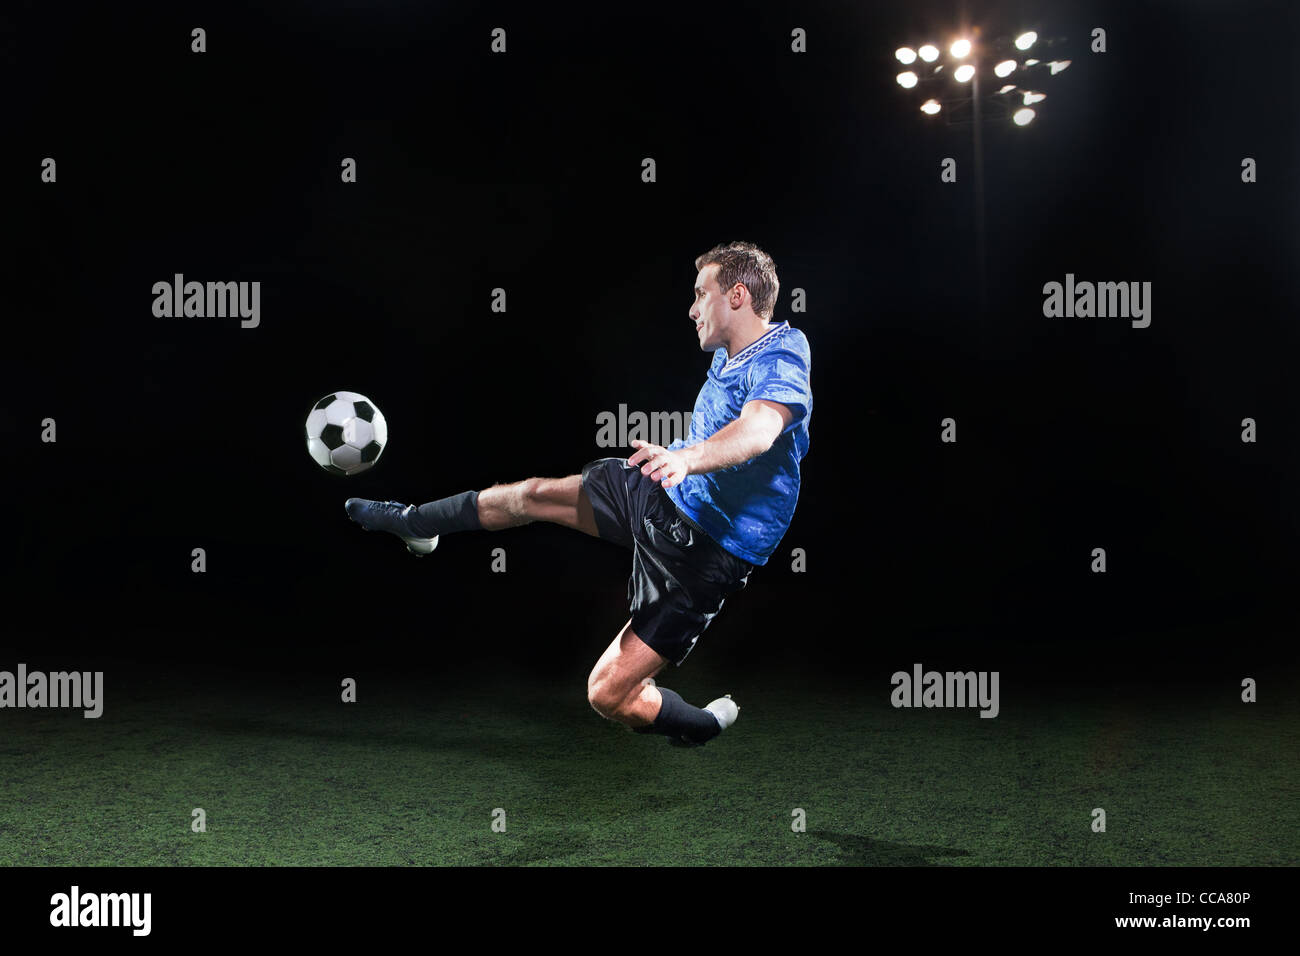 Giovane giocatore di calcio salta in aria a calciare la sfera Foto Stock